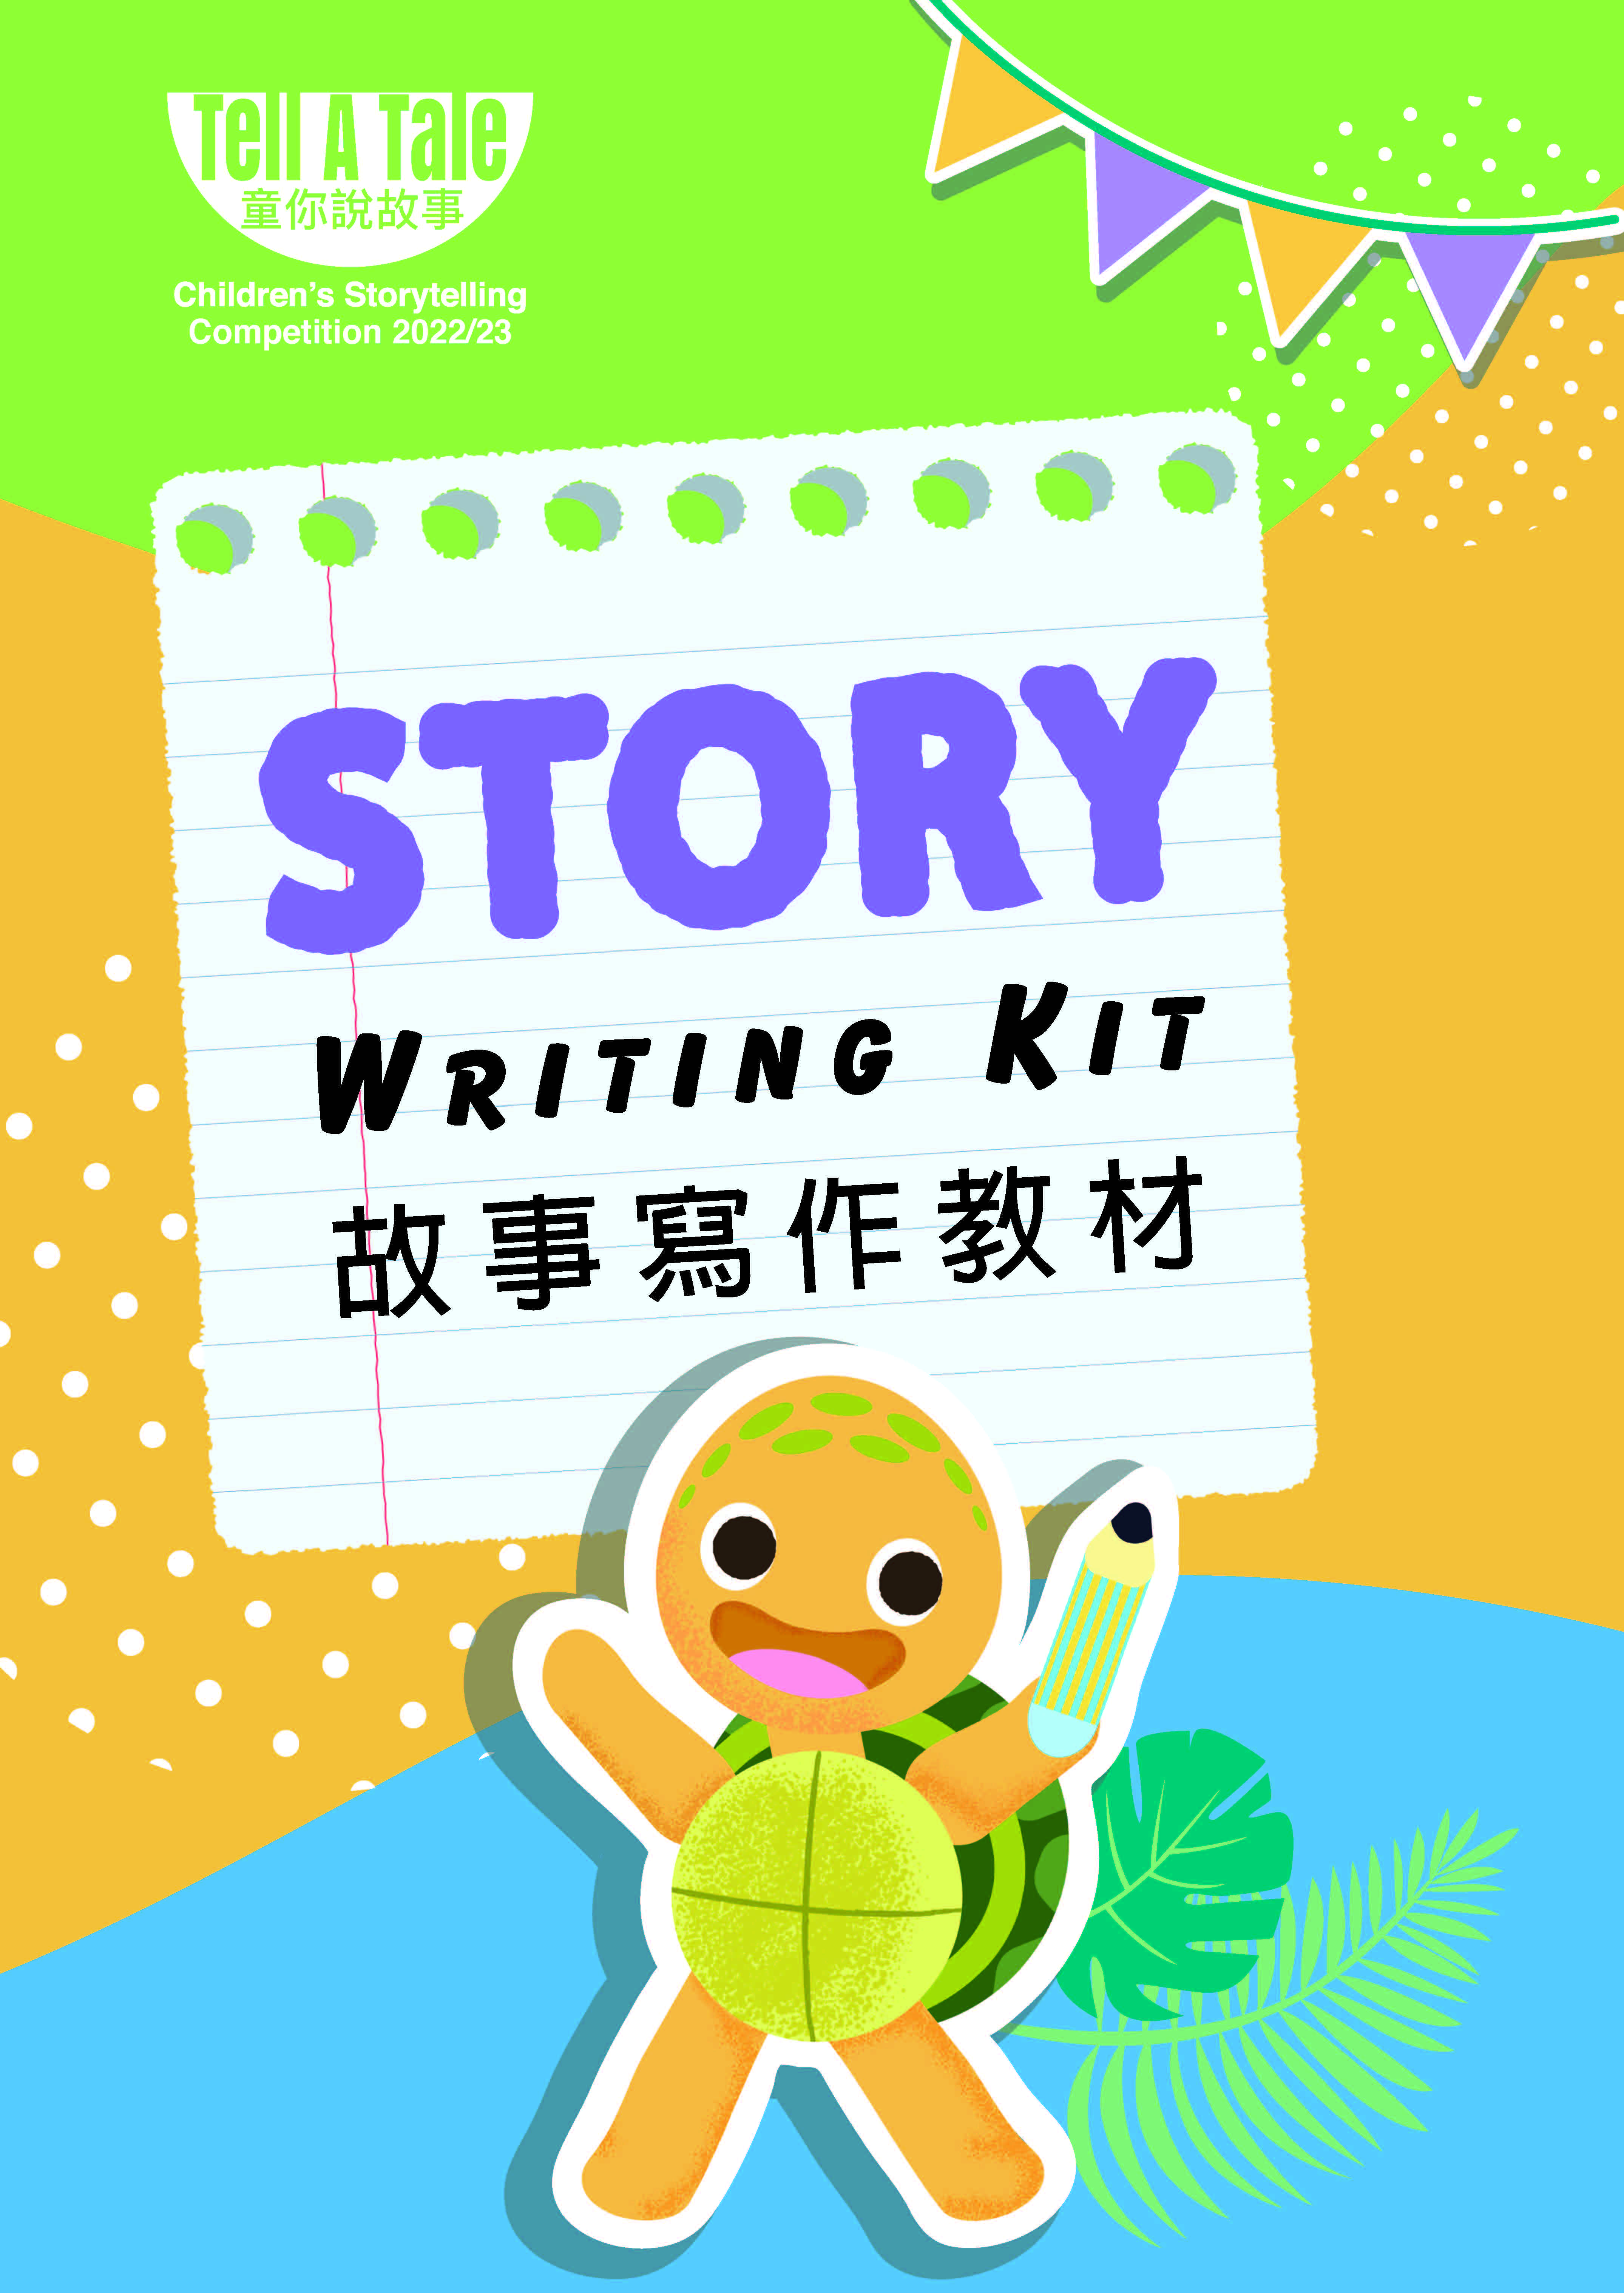 「童你說故事」兒童故事寫作手冊